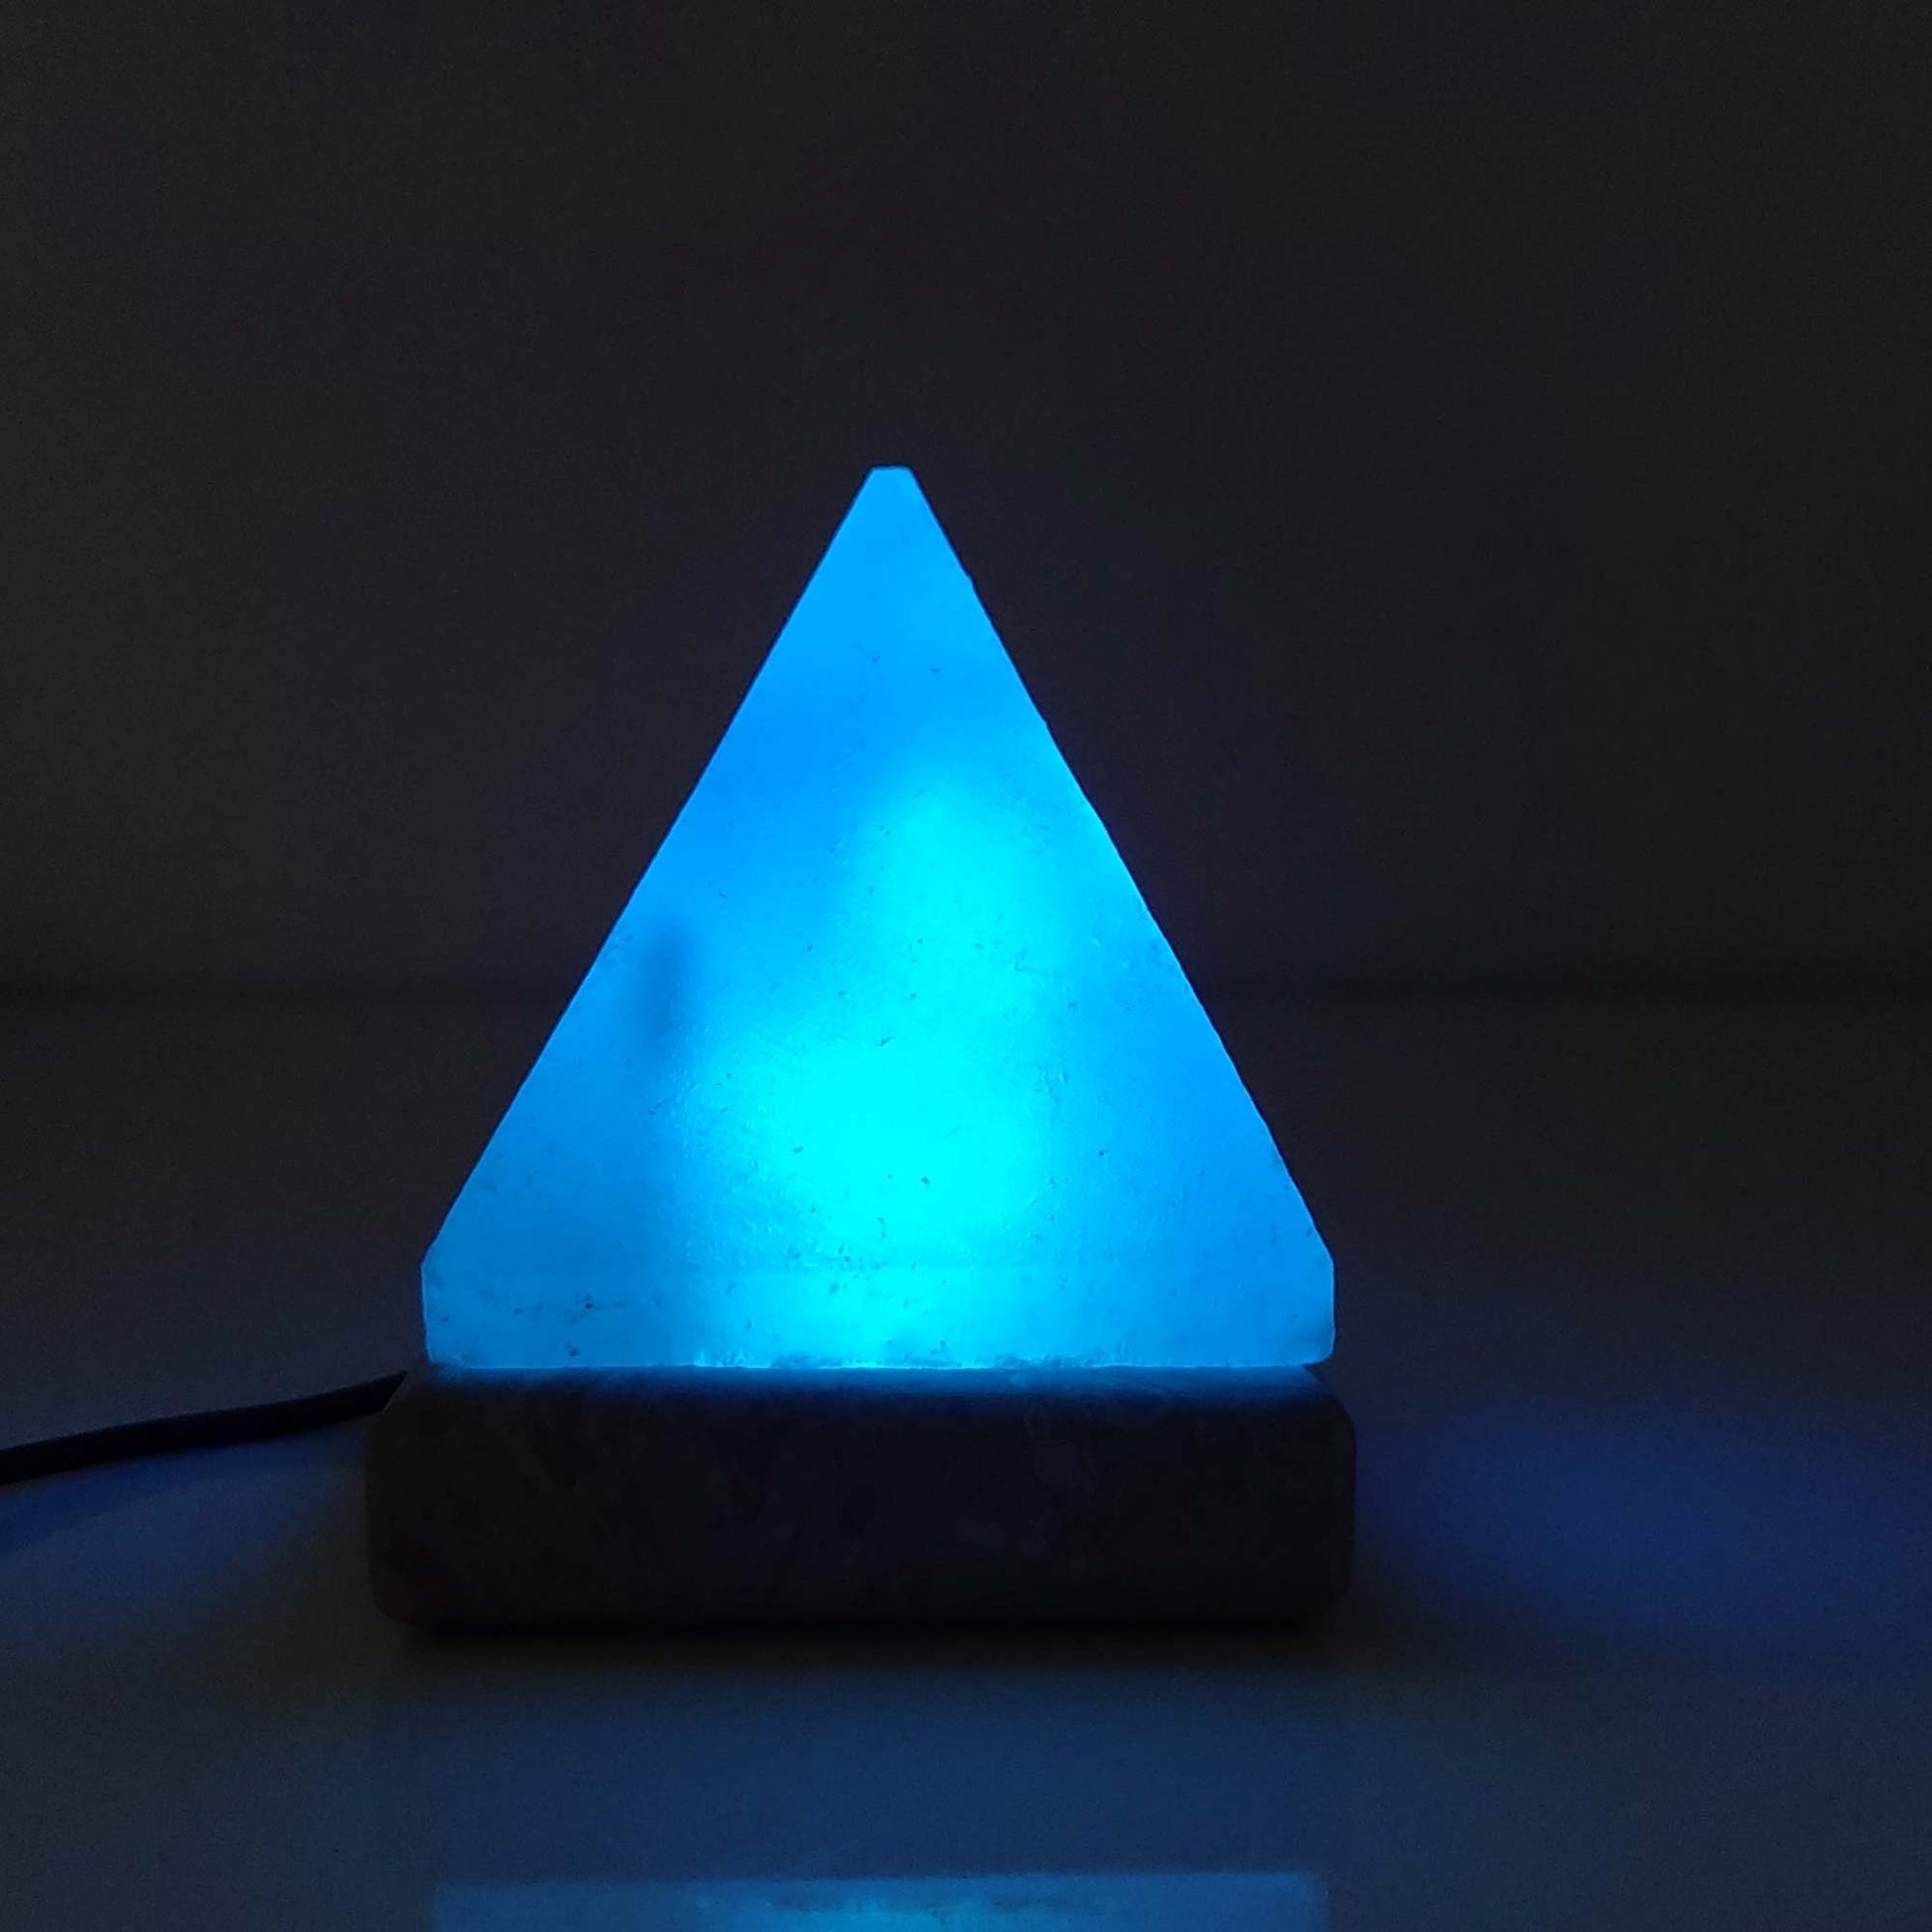 USB Colour Changing Salt Himalayan Lamp - Pyramid Shape Pink Rock LED Light